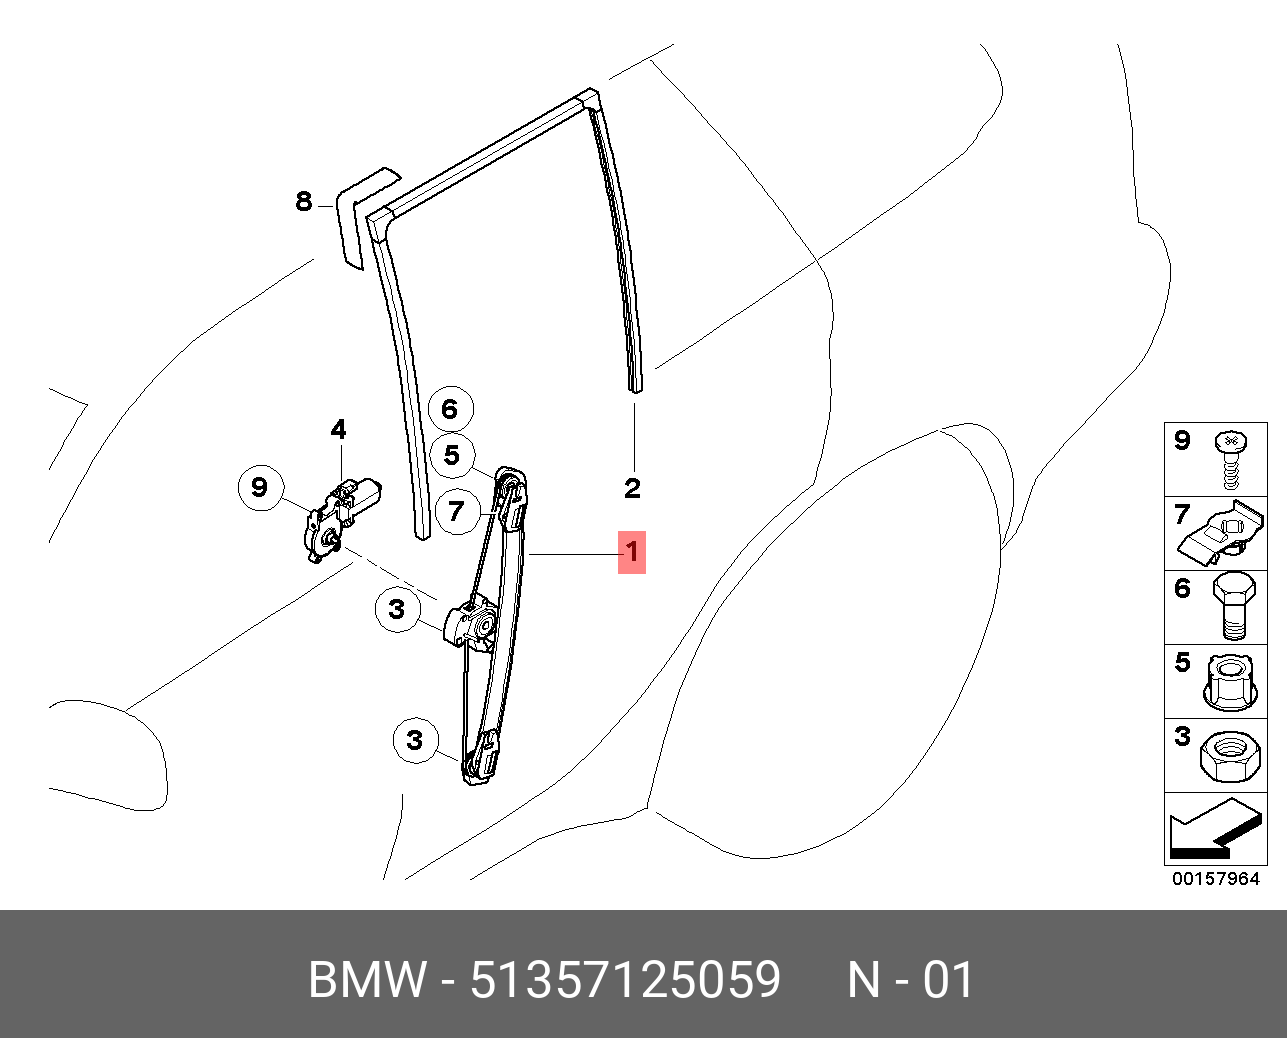 Задняя дверь х5 е53. BMW x5 e53 направляющие стекла стеклоподъемника передней. Схема стеклоподъемника BMW x5. Болт крепление стекла к стеклоподъемнику БМВ х5 е53. Схема заднего стеклоподъемника БМВ е53.